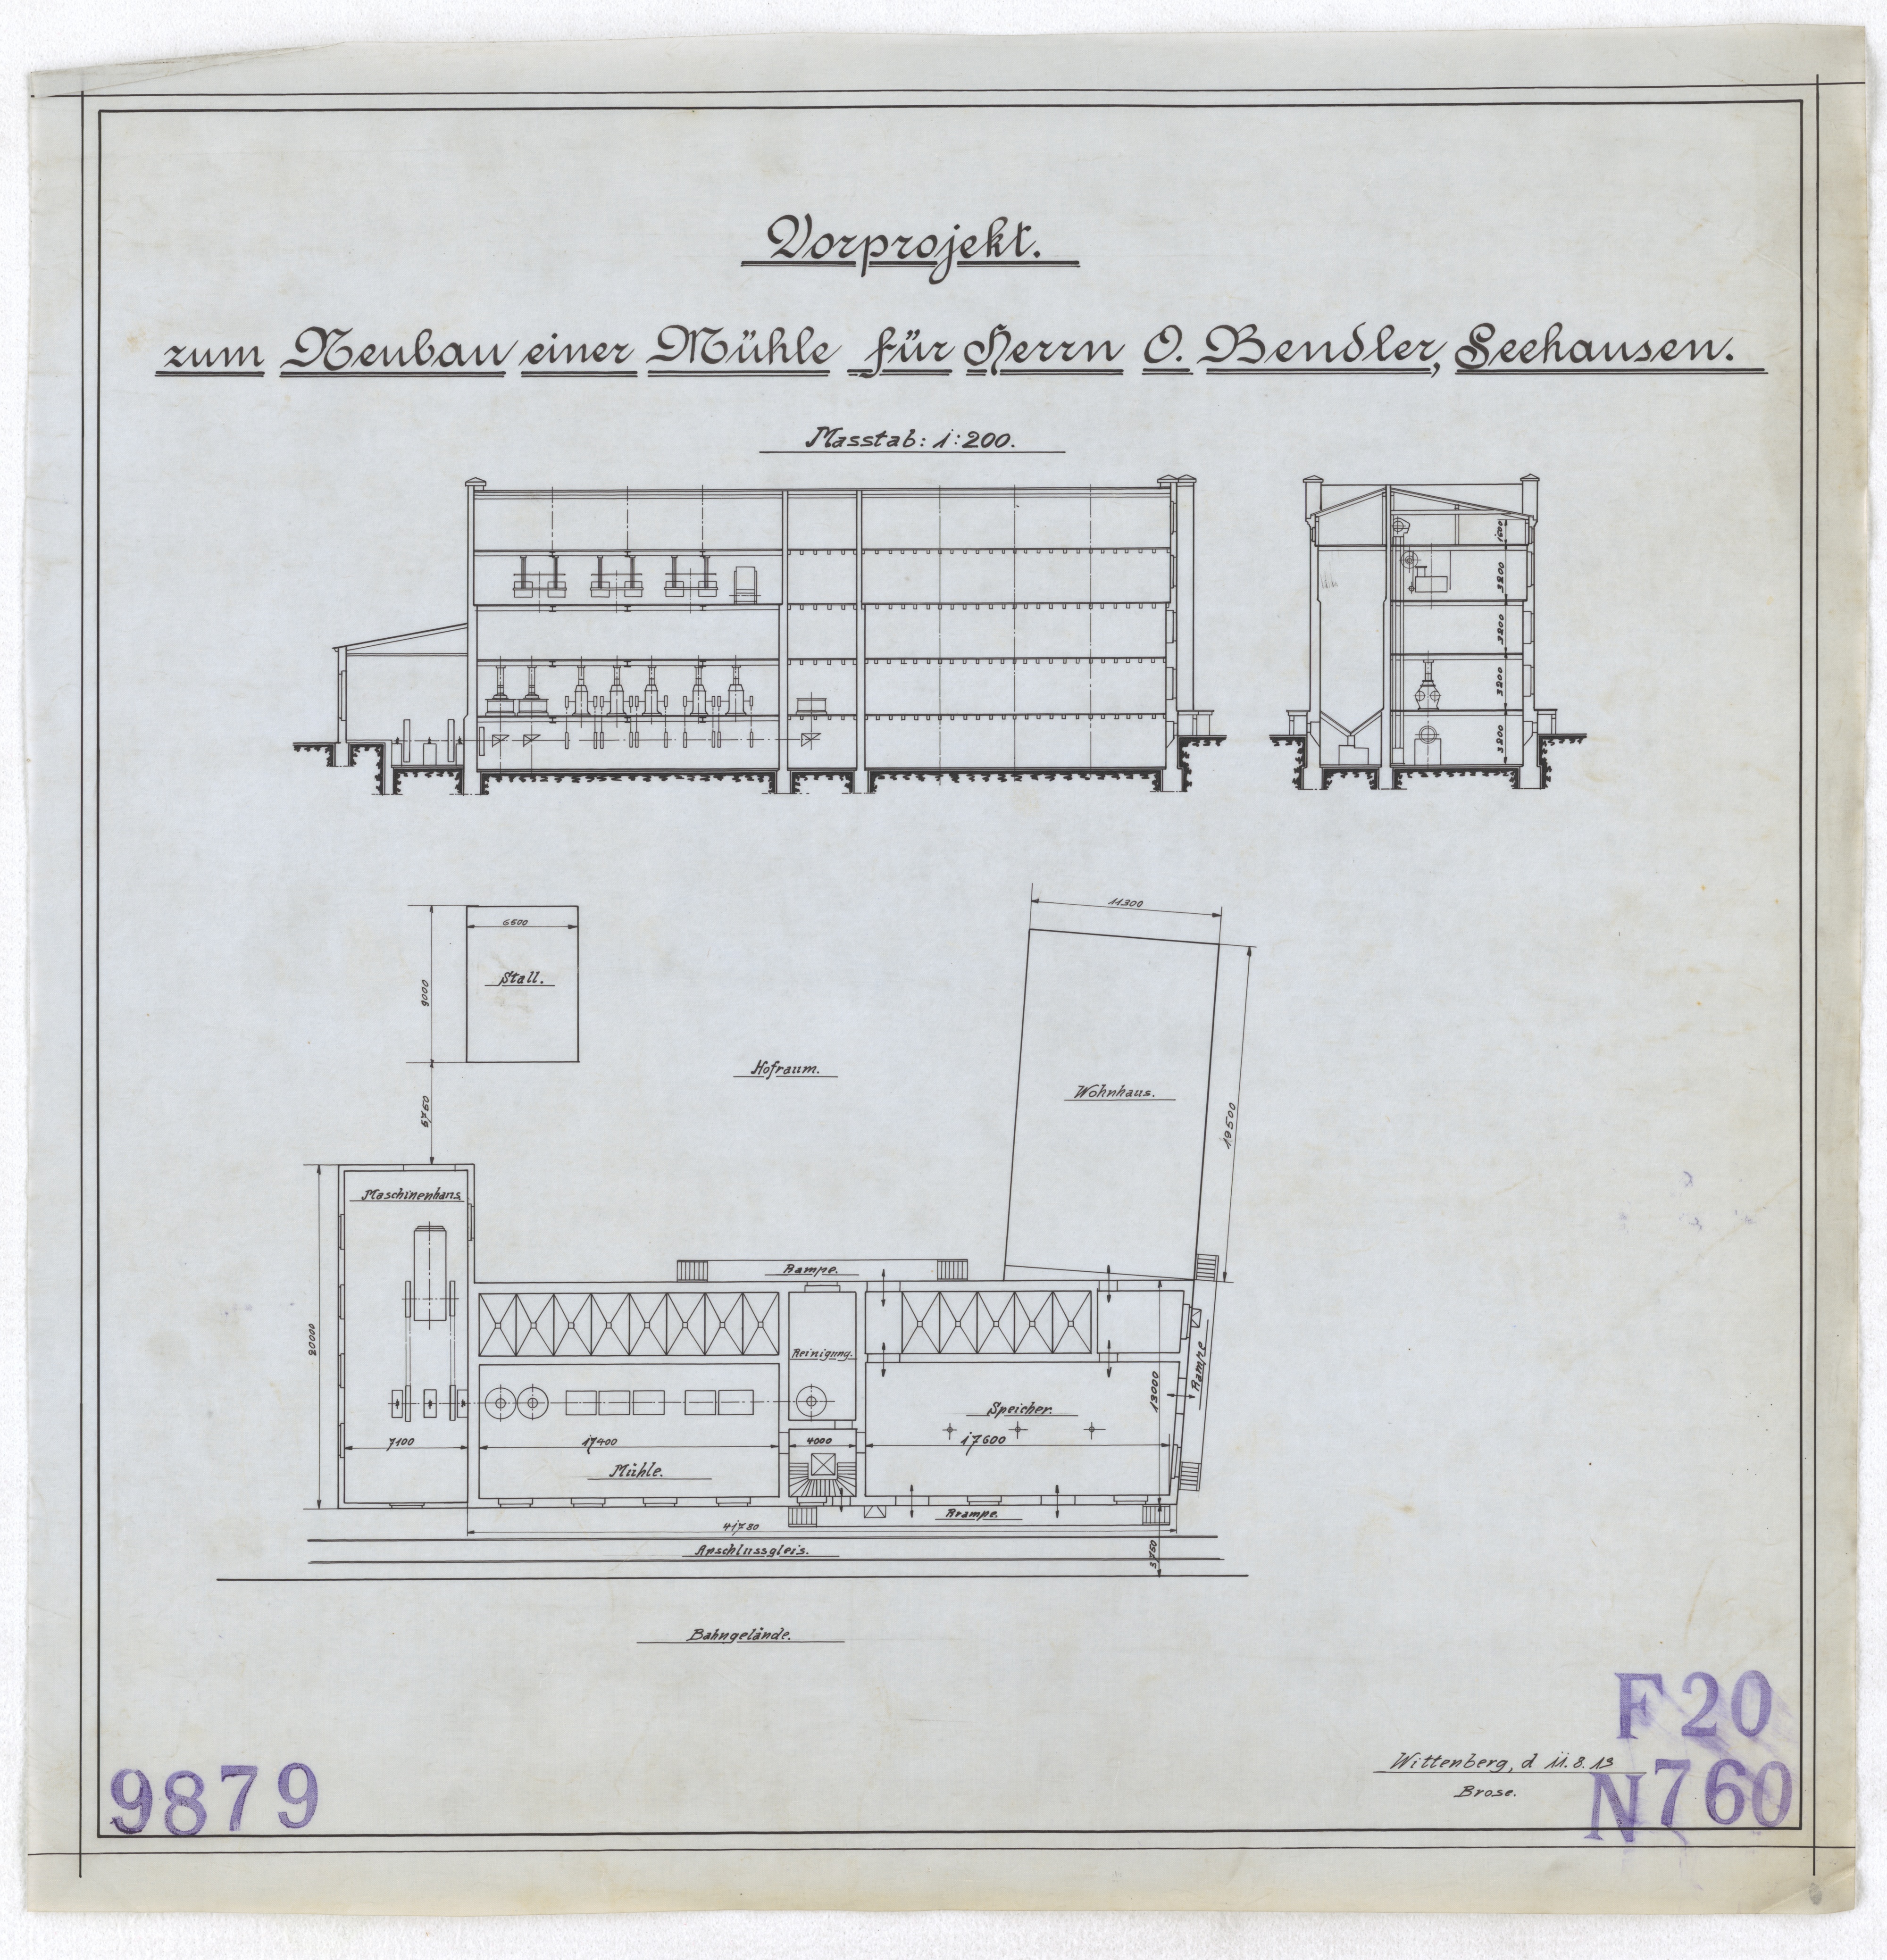 Technische Zeichnung : Vorprojekt zum Neubau einer Mühle für Herrn O. Bendler, Seehausen (Stiftung Deutsches Technikmuseum Berlin CC BY-SA)